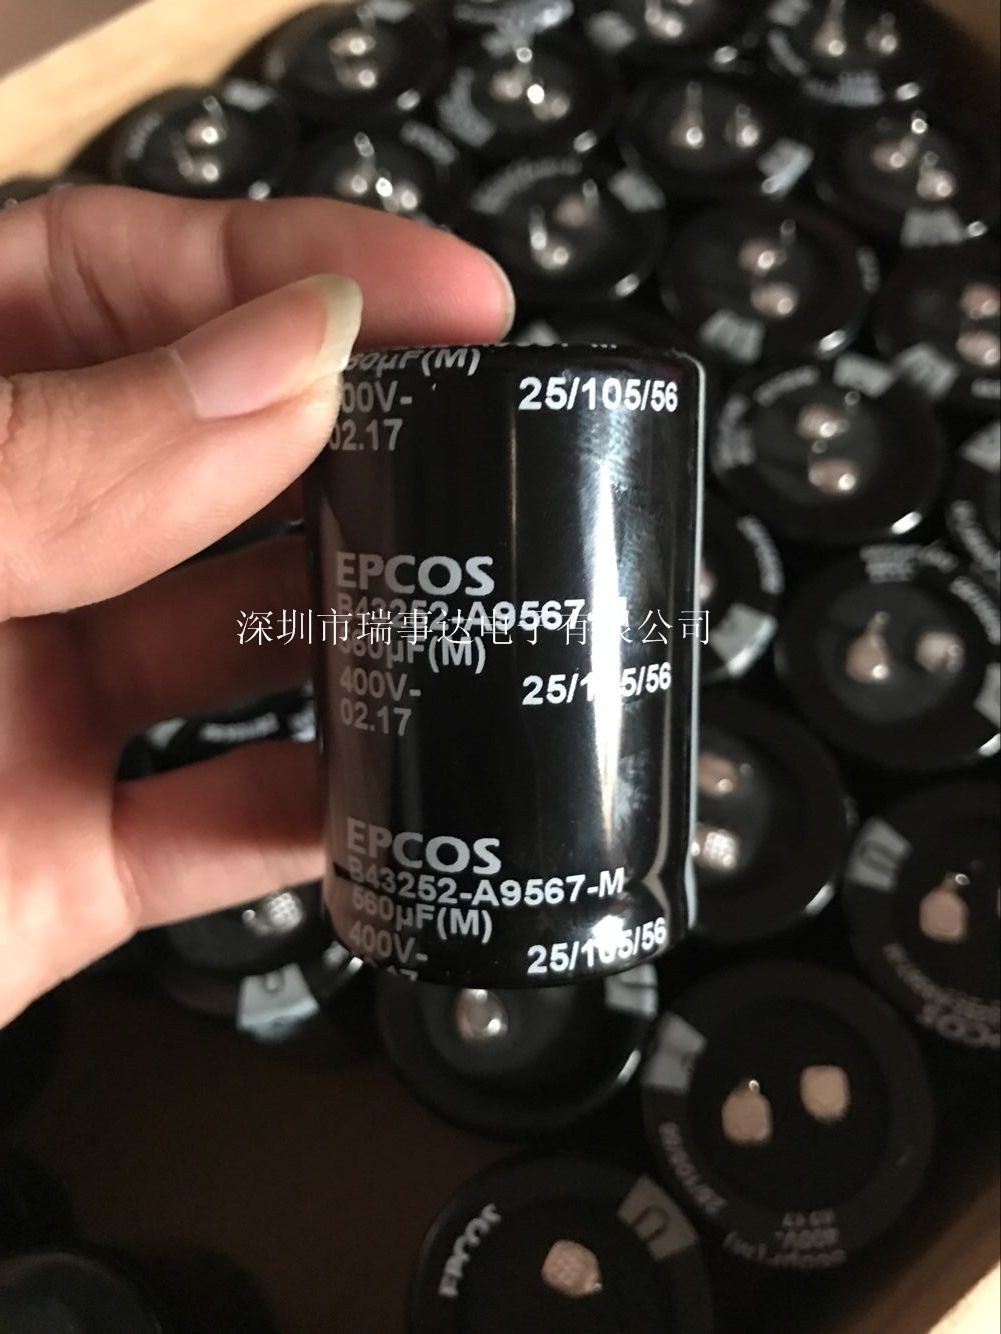 B43252-A9687-M	EPCOS电容器680uF/400V